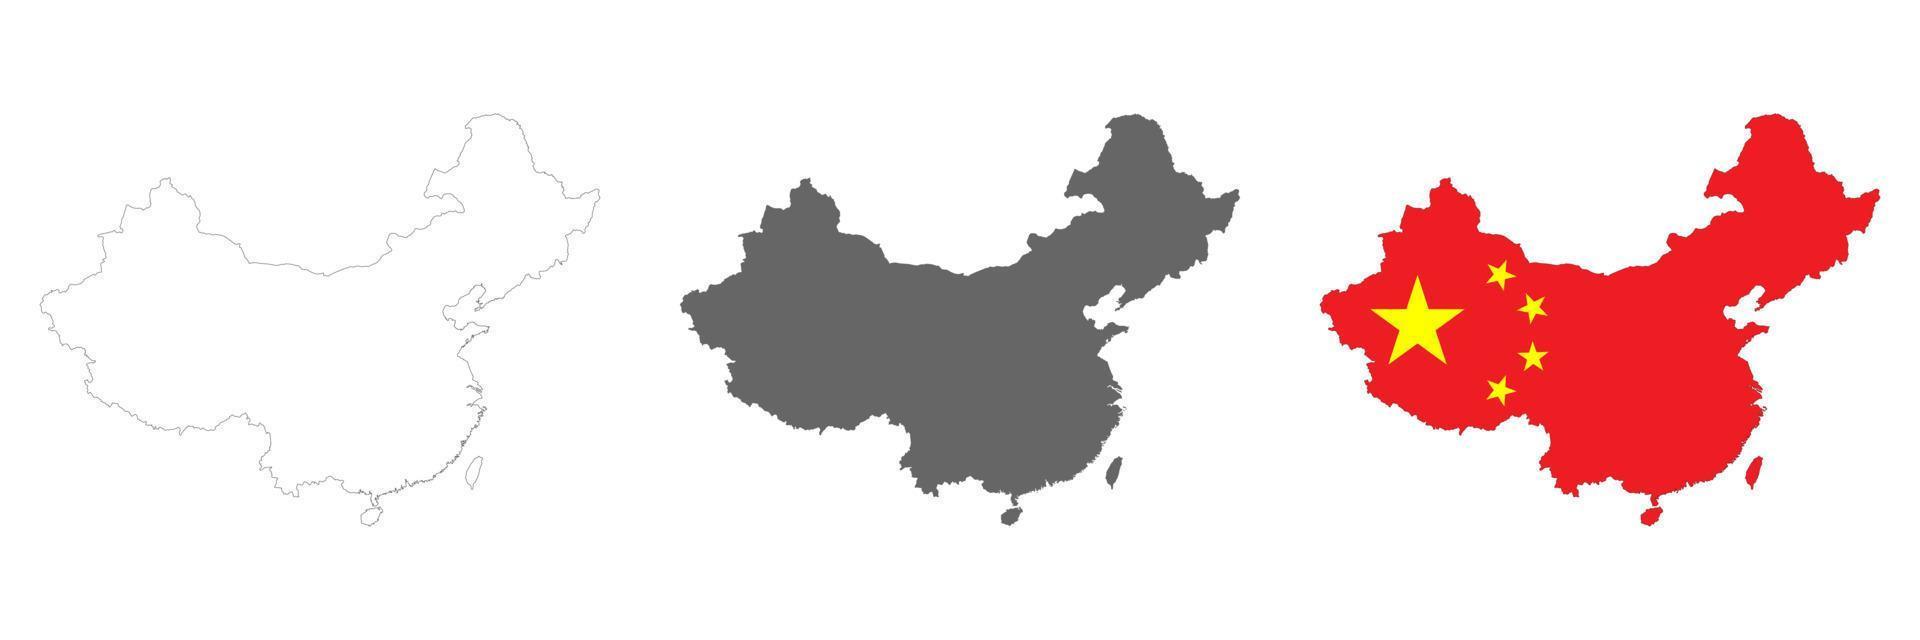 sehr detaillierte China-Karte mit auf dem Hintergrund isolierten Grenzen vektor